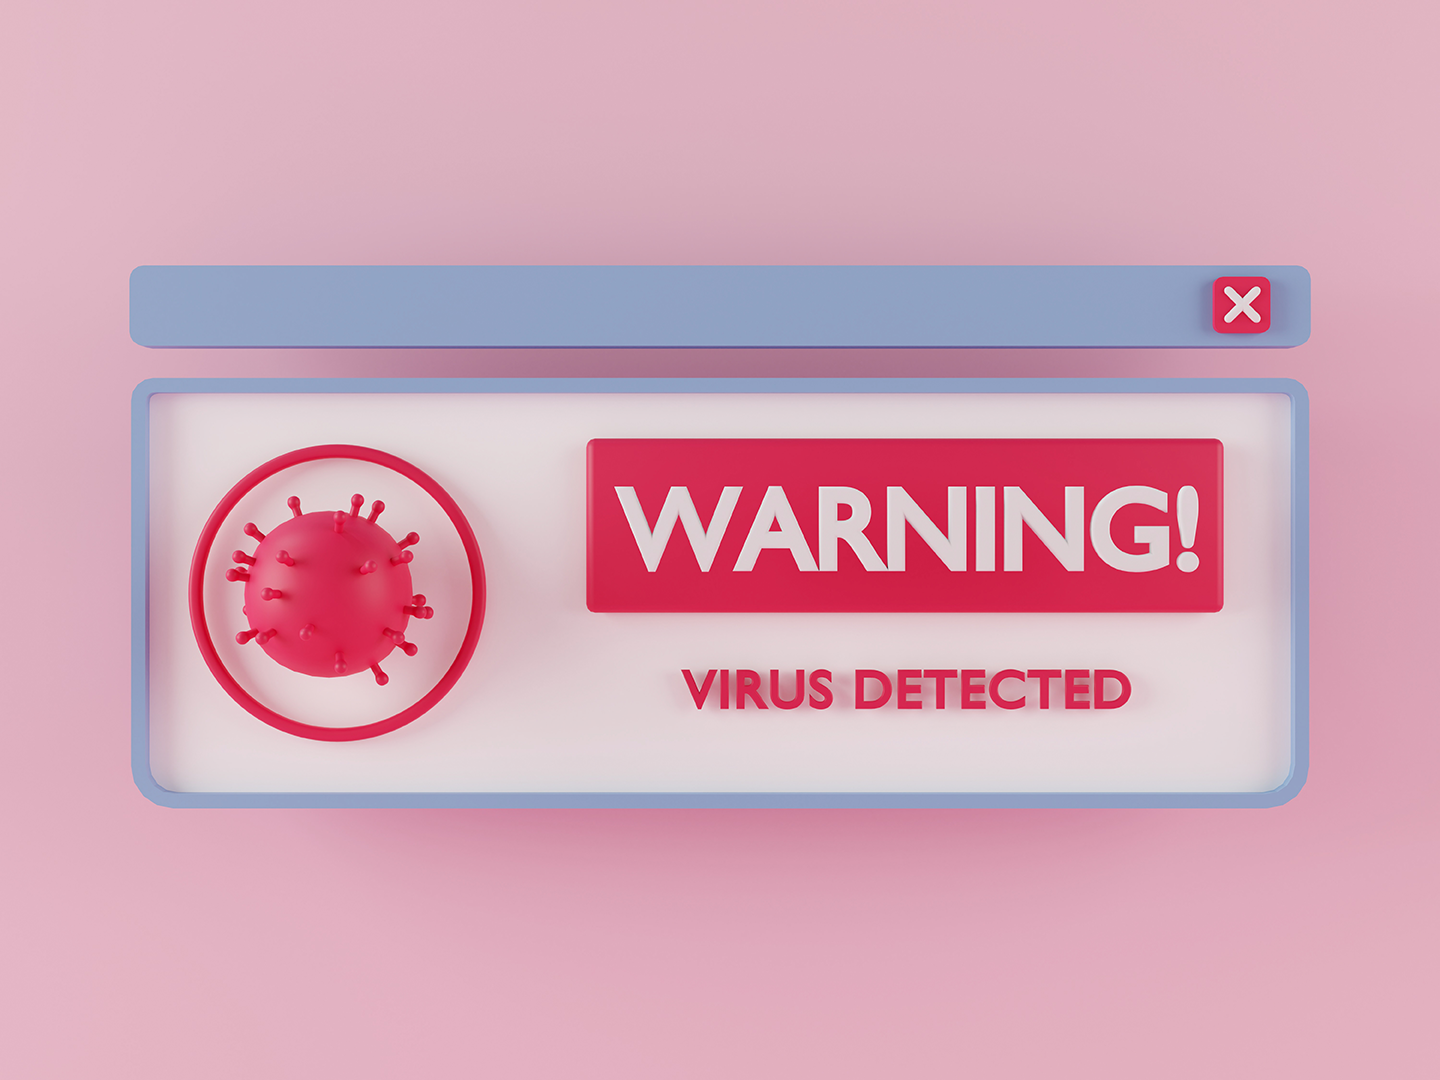 Fondo ros con una ventana de emergencia con la leyenda precaución virus detectado, representando qué debemos de prender del COVID-19 y los virus